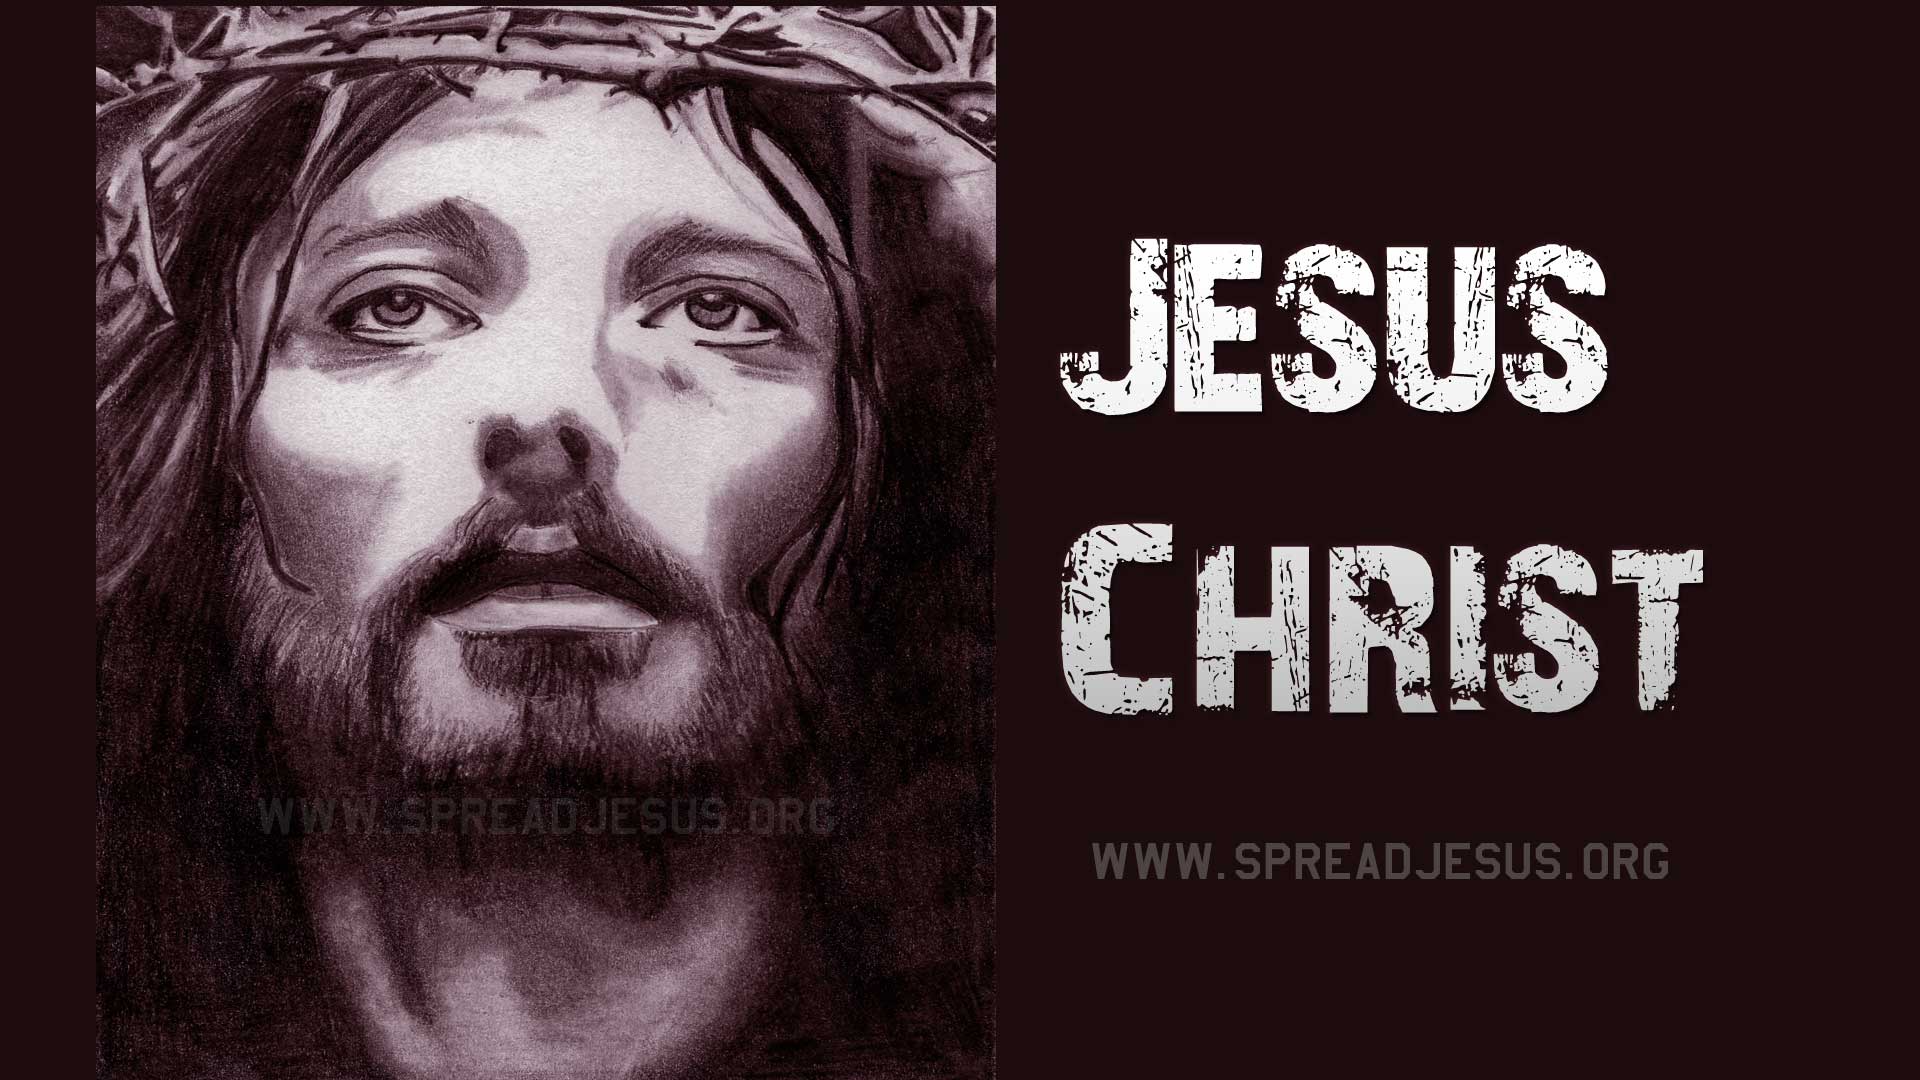 Download Gambar Jesus Wallpaper Hd Laptop terbaru 2020